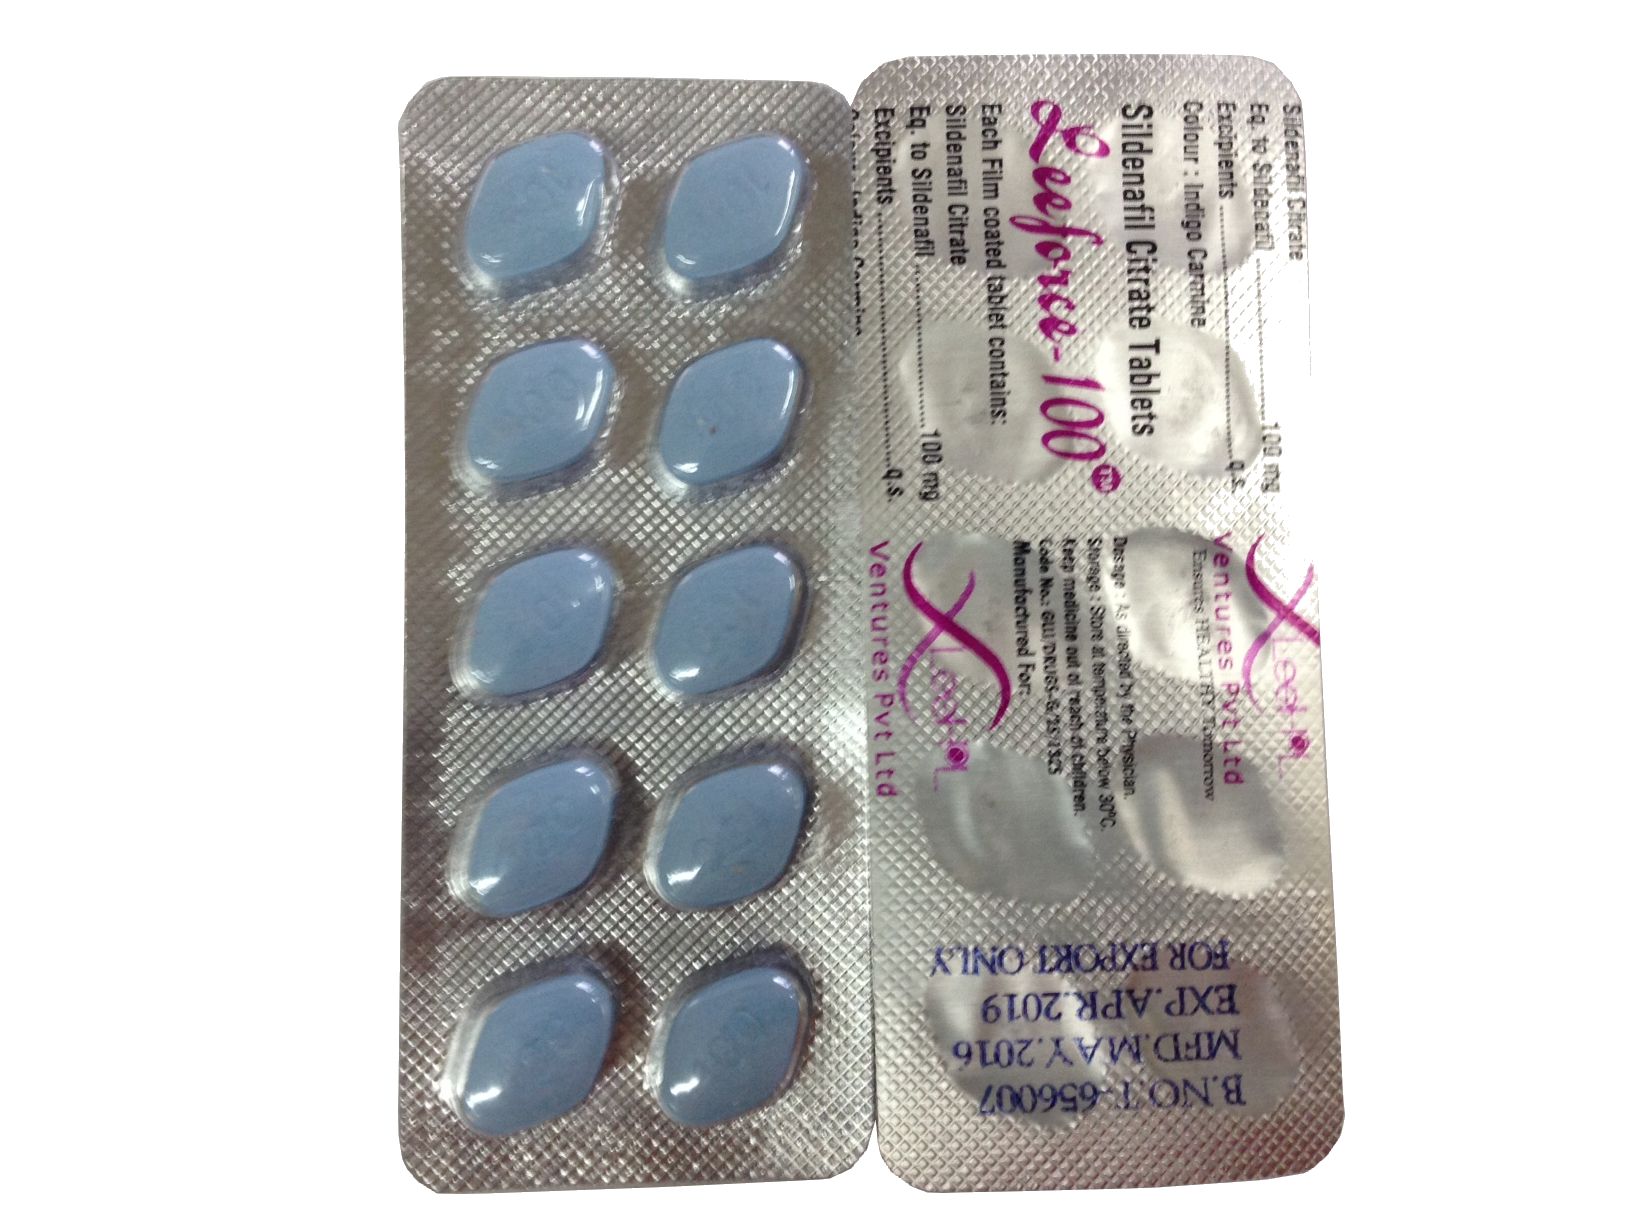 Dosering av Viagra: Tabletter om 25, 50 och 100 mg